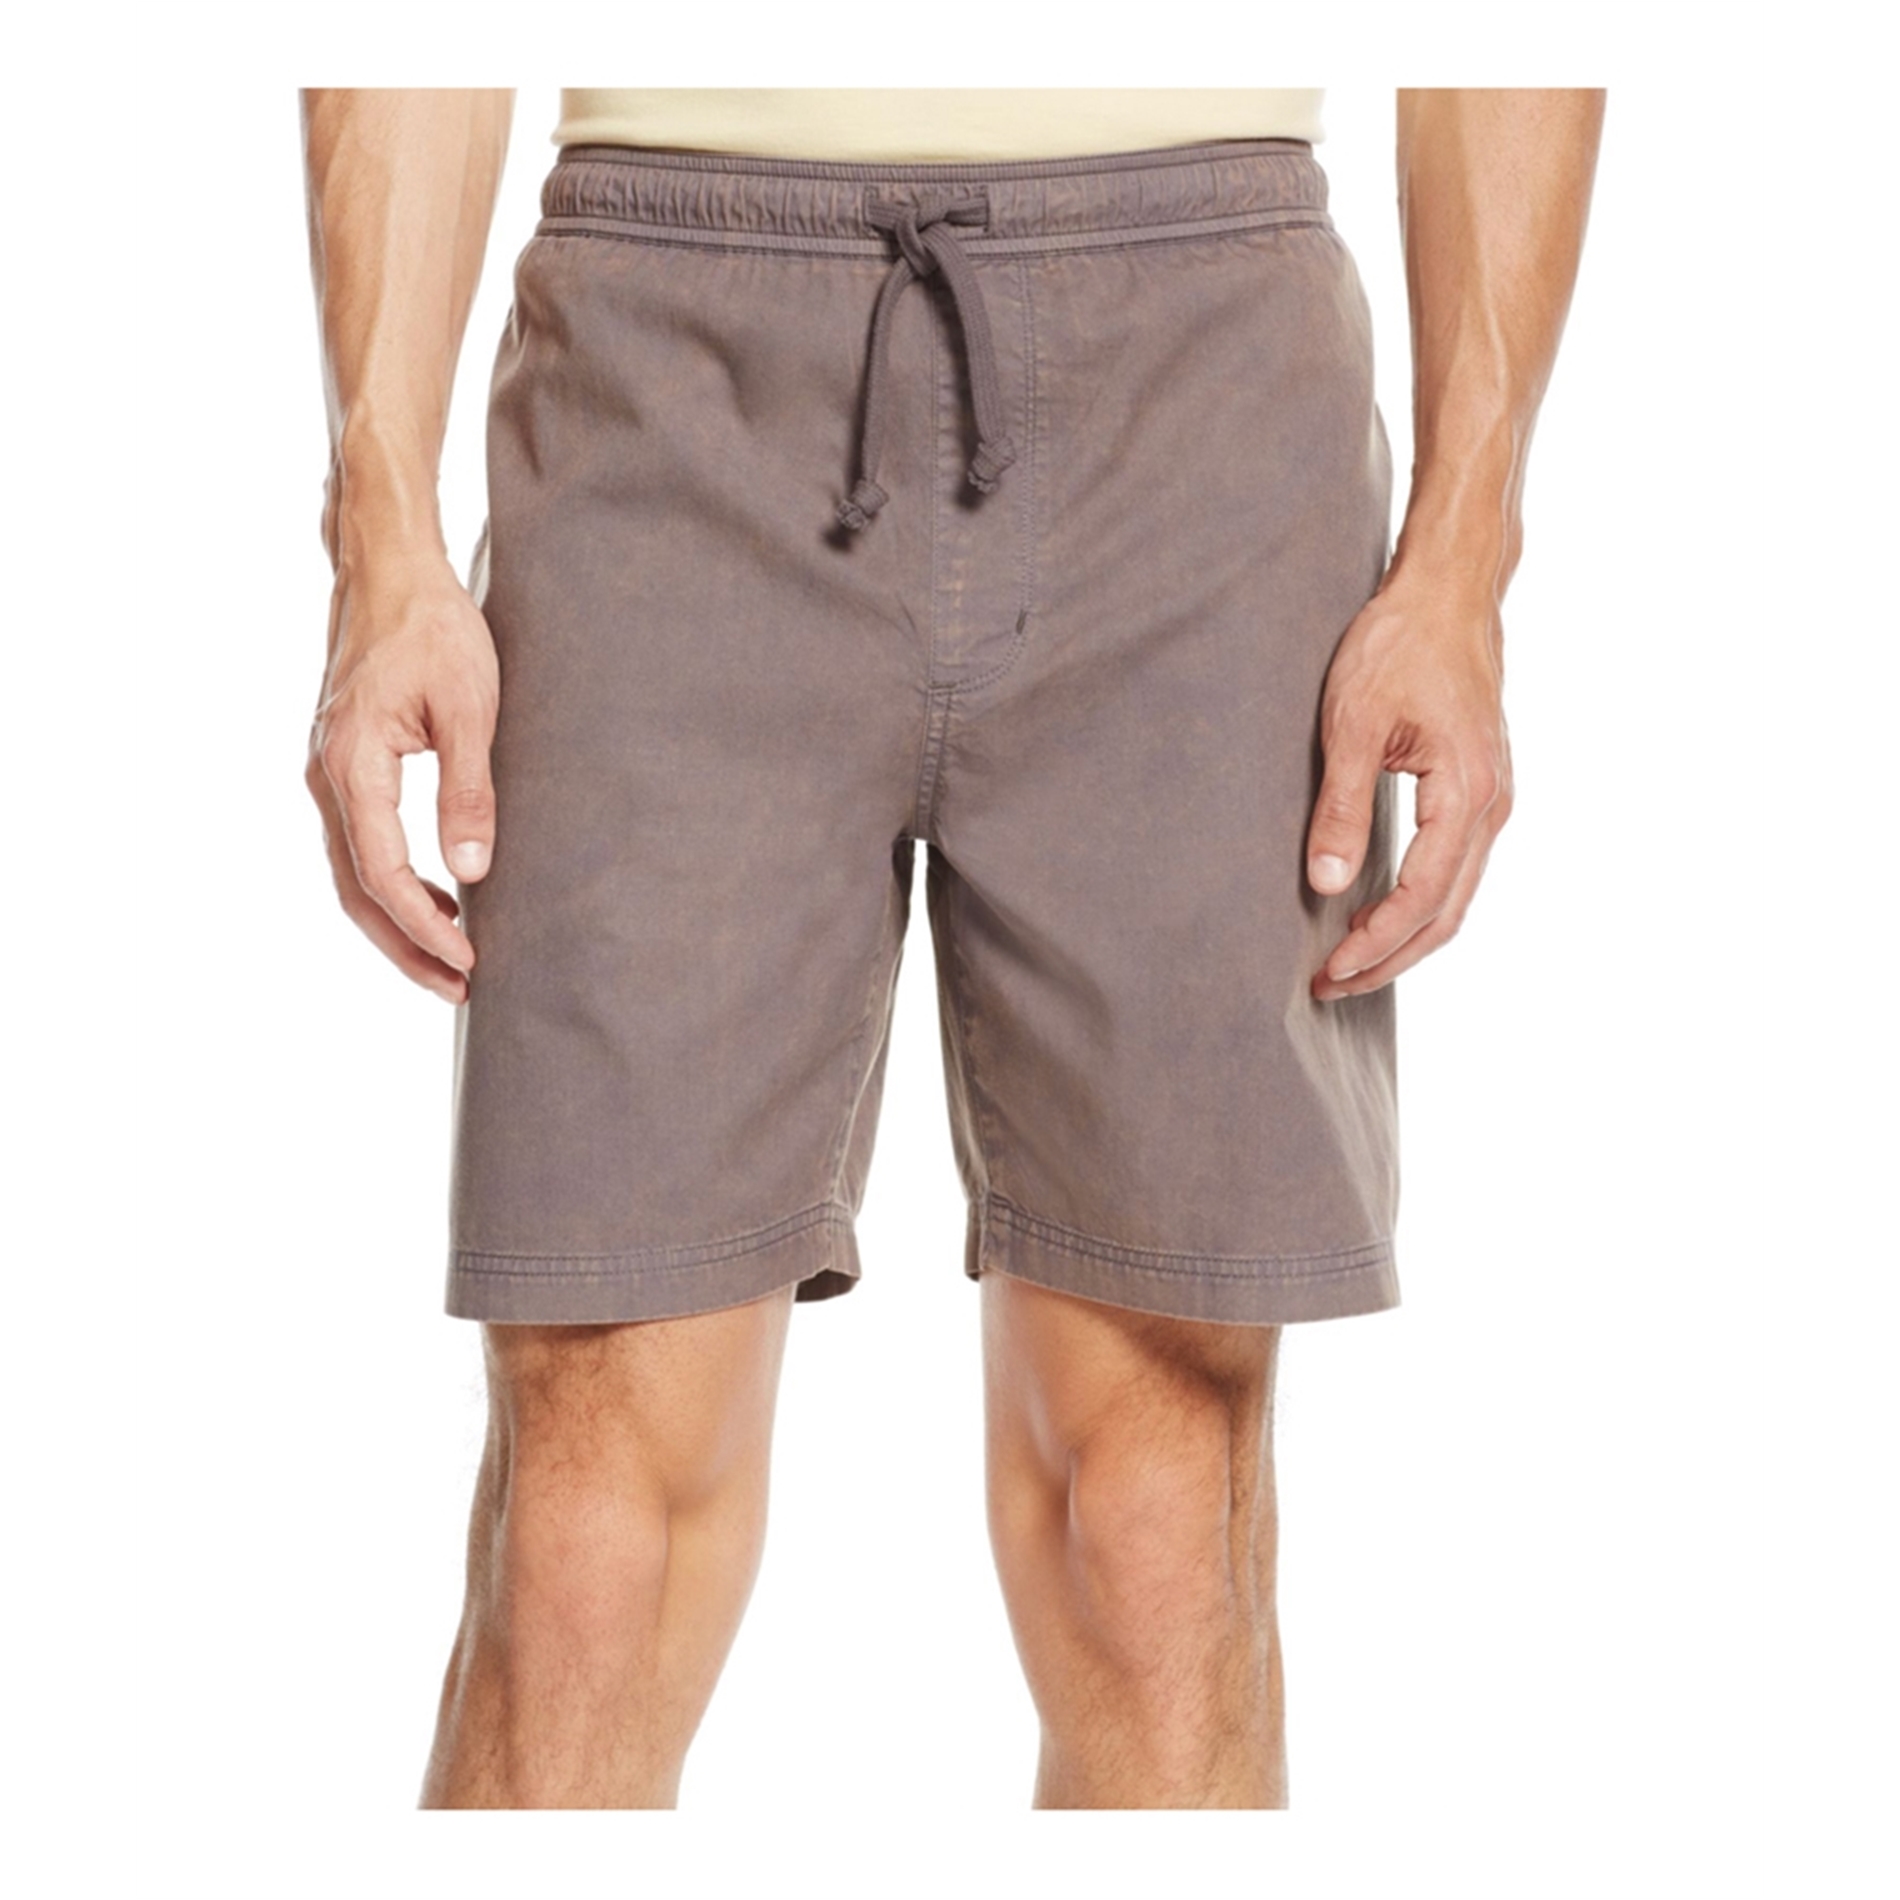 Chor Clothing Company Mens Pocket Washed-Out Casual Walking Shorts